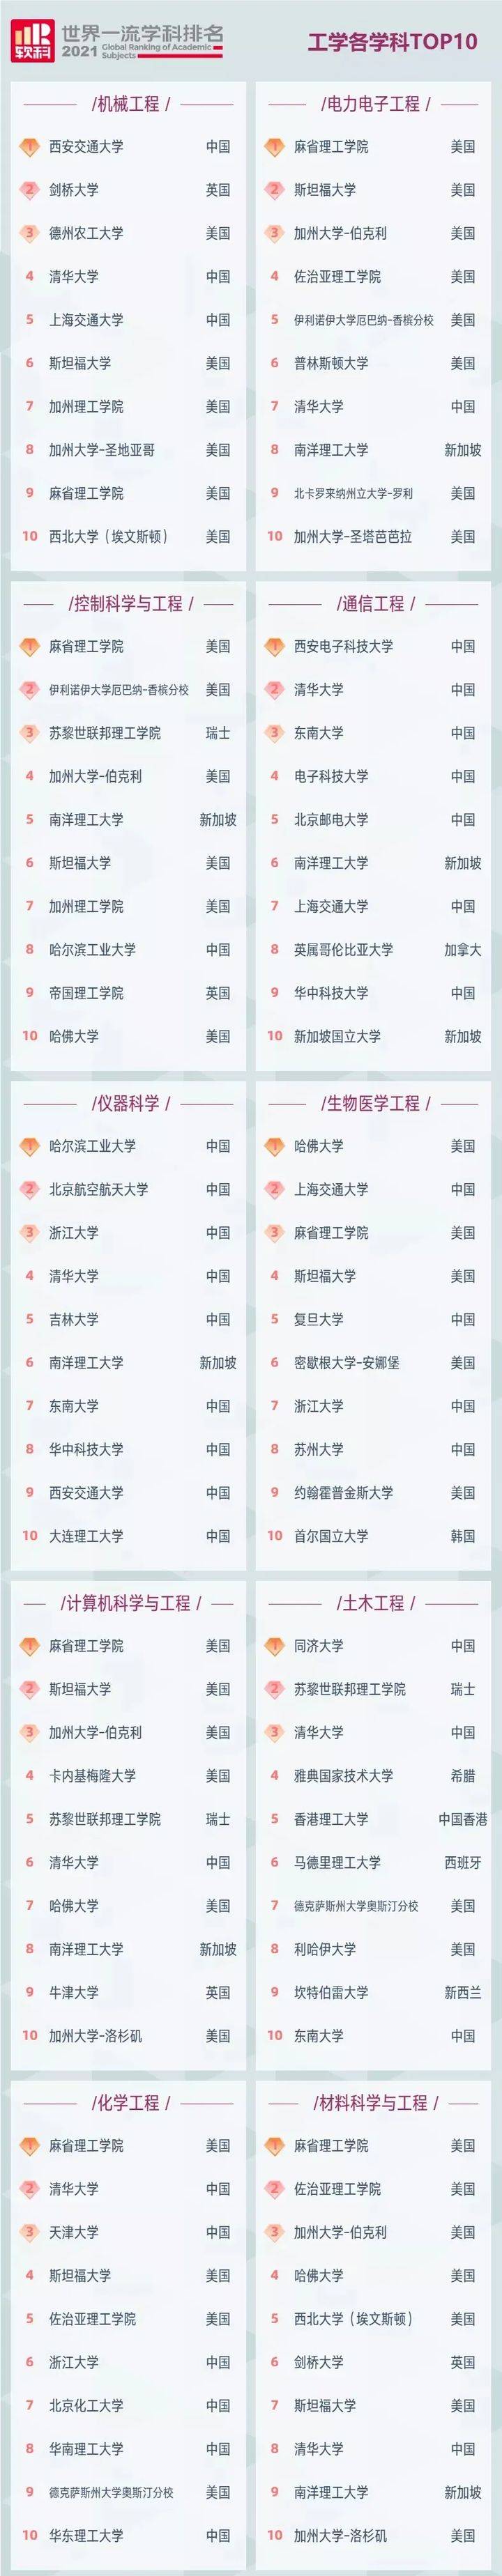 学科排行榜_上海交通大学跻身前3甲,首次发布“中国高职院校排名”